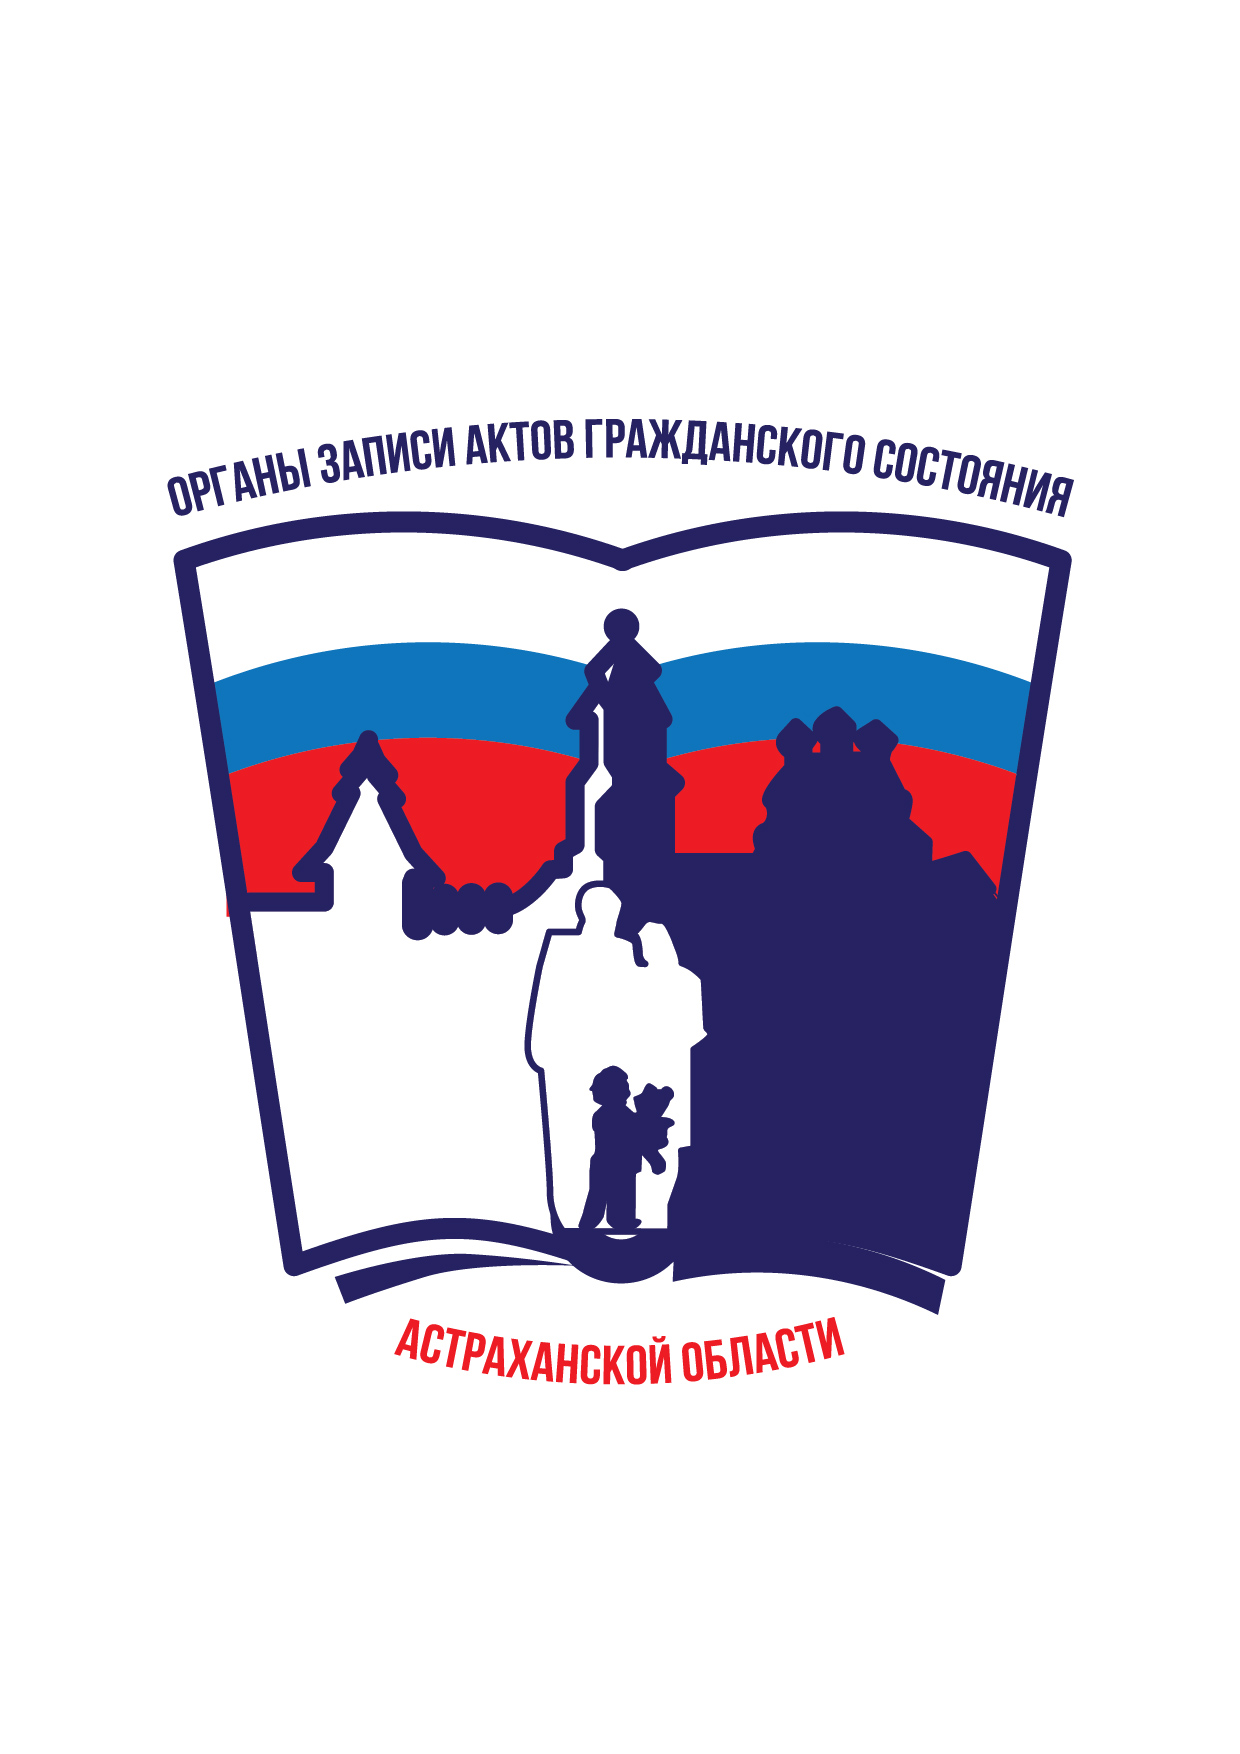 Изменяется режим работы органов ЗАГС Астраханской области в период праздников